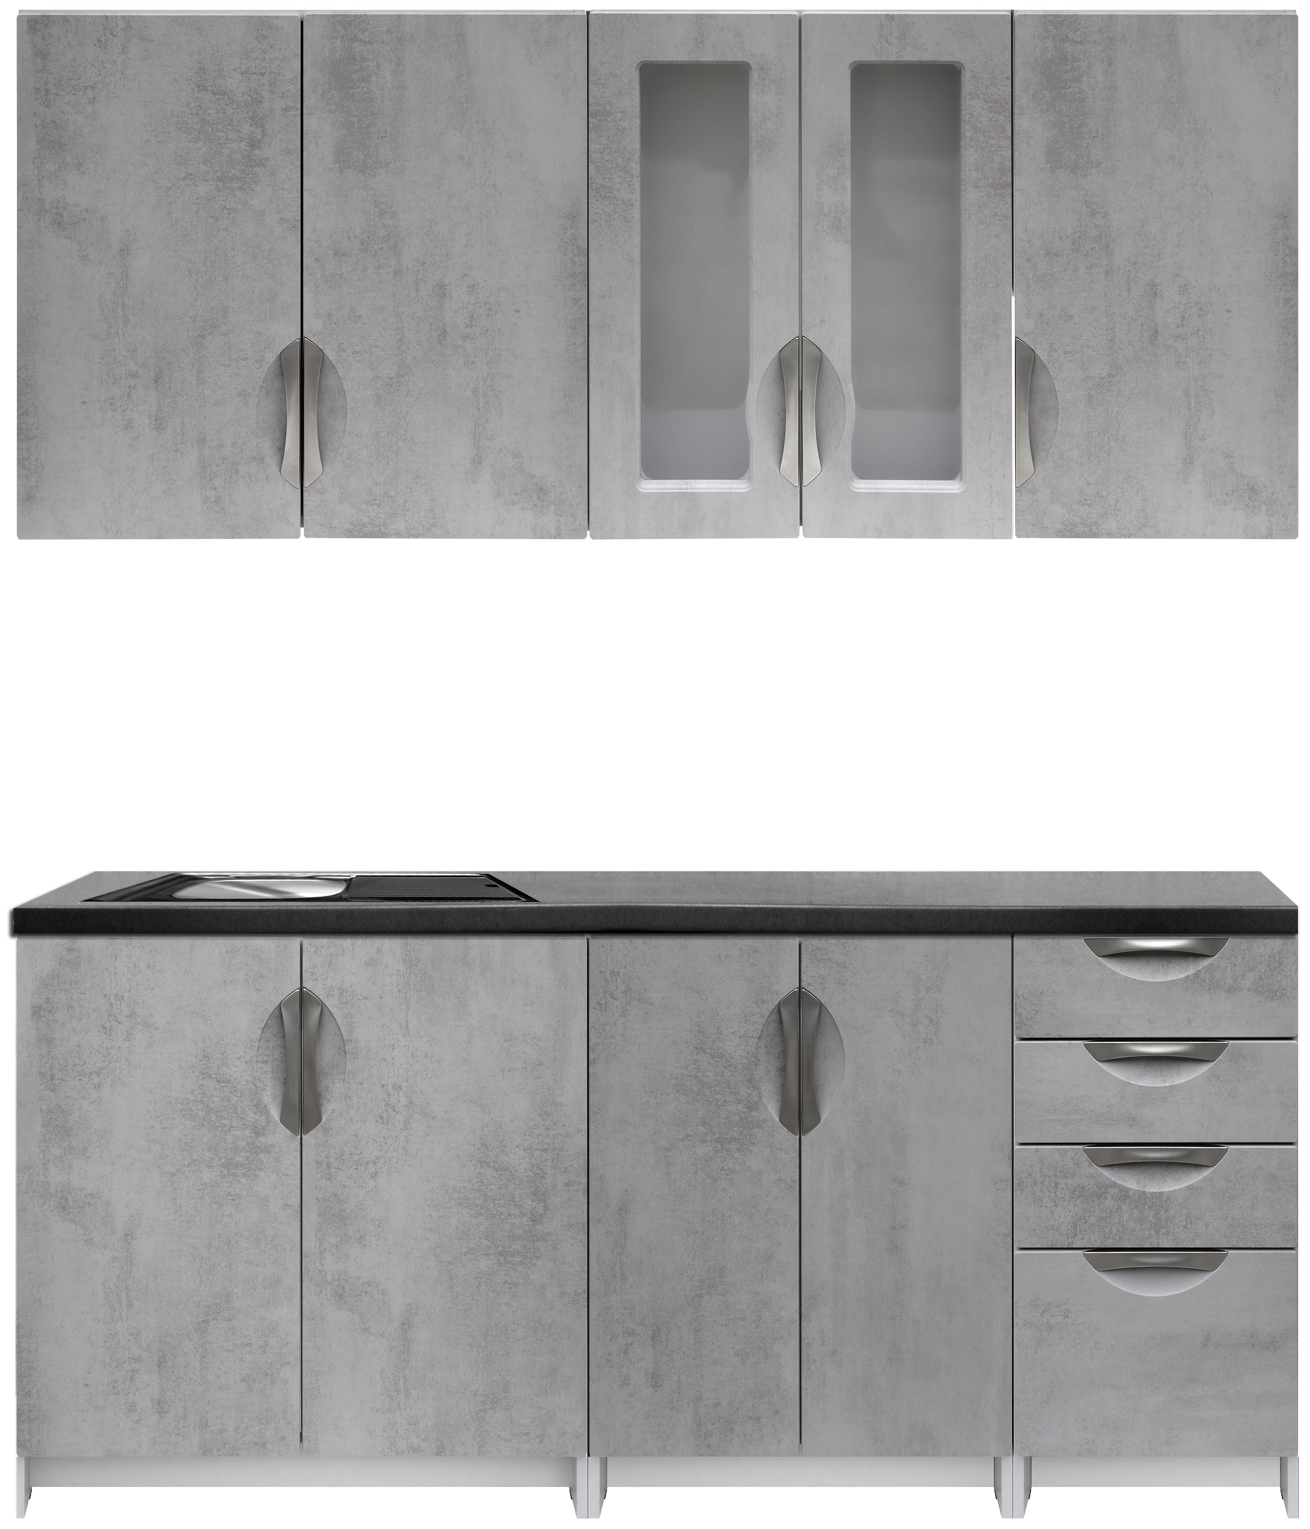 Kuchyňská linka 180 cm barva beton korpus šedý